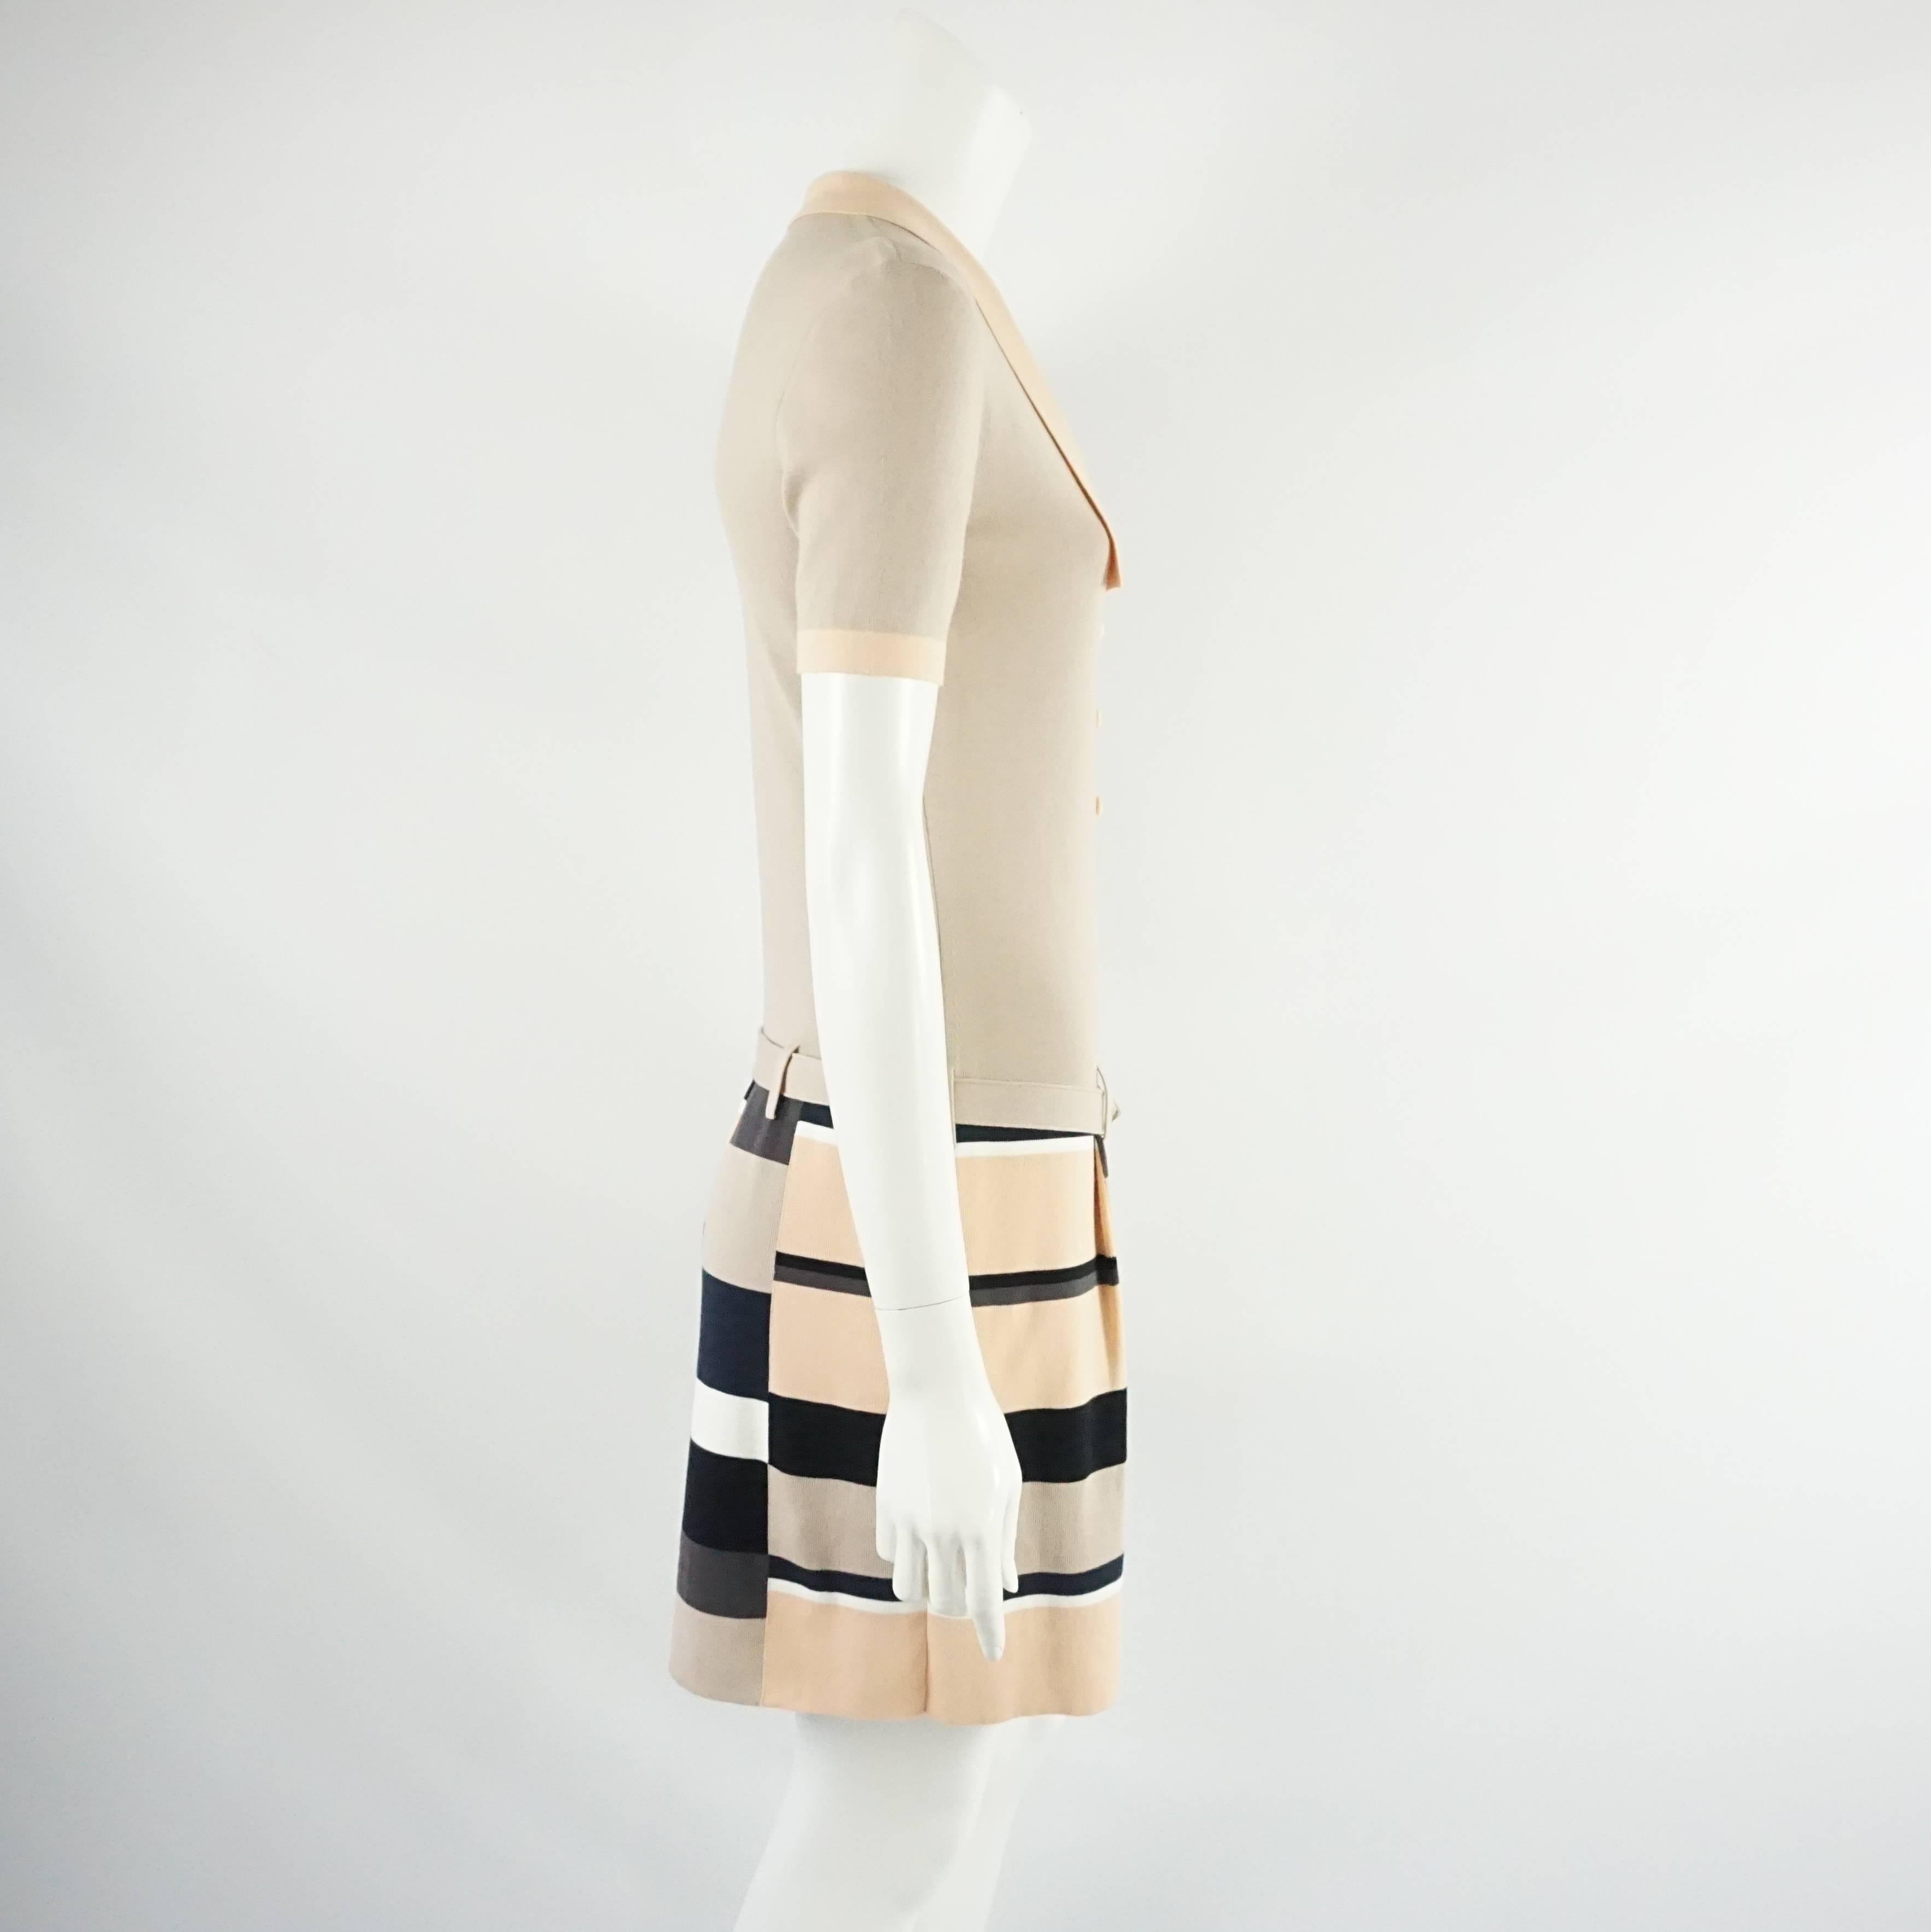 Cette robe en maille de coton Fendi est de couleur taupe clair avec une garniture pêche sur le col et l'encolure. La jupe est légèrement plissée et présente un imprimé à carreaux taupe, pêche, noir et marron. La robe est également accompagnée d'une